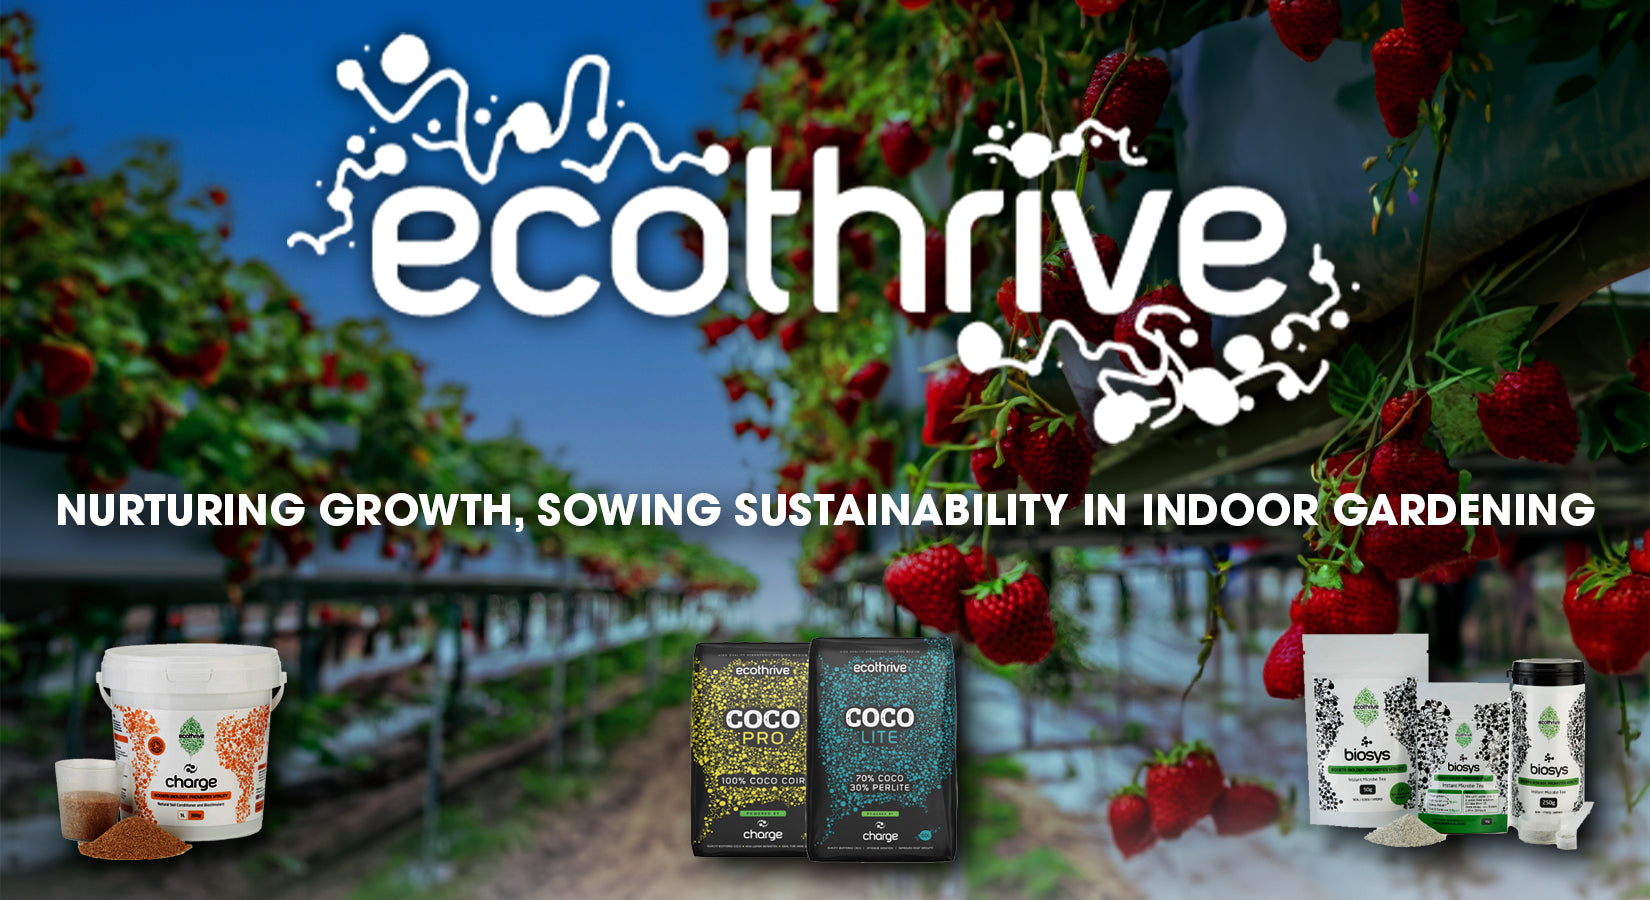 Ecothrive: Nurturing Growth, Sowing Sustainability in Indoor Gardening